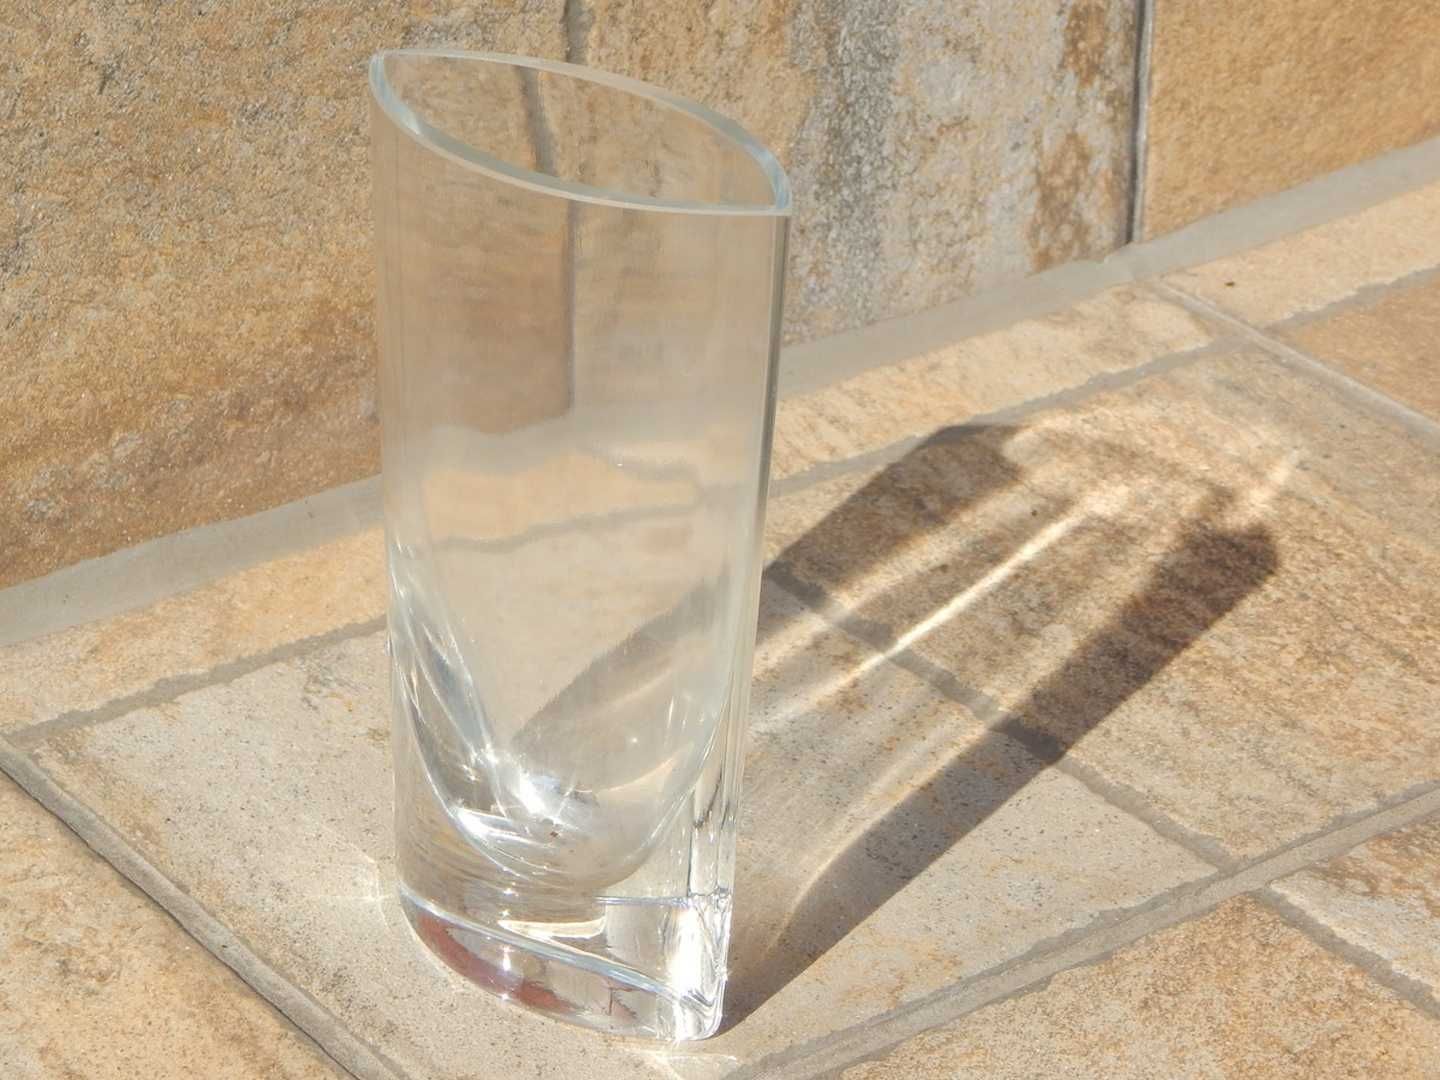 Vaza de sticla transparenta forma ovala pentru flori 16 cm